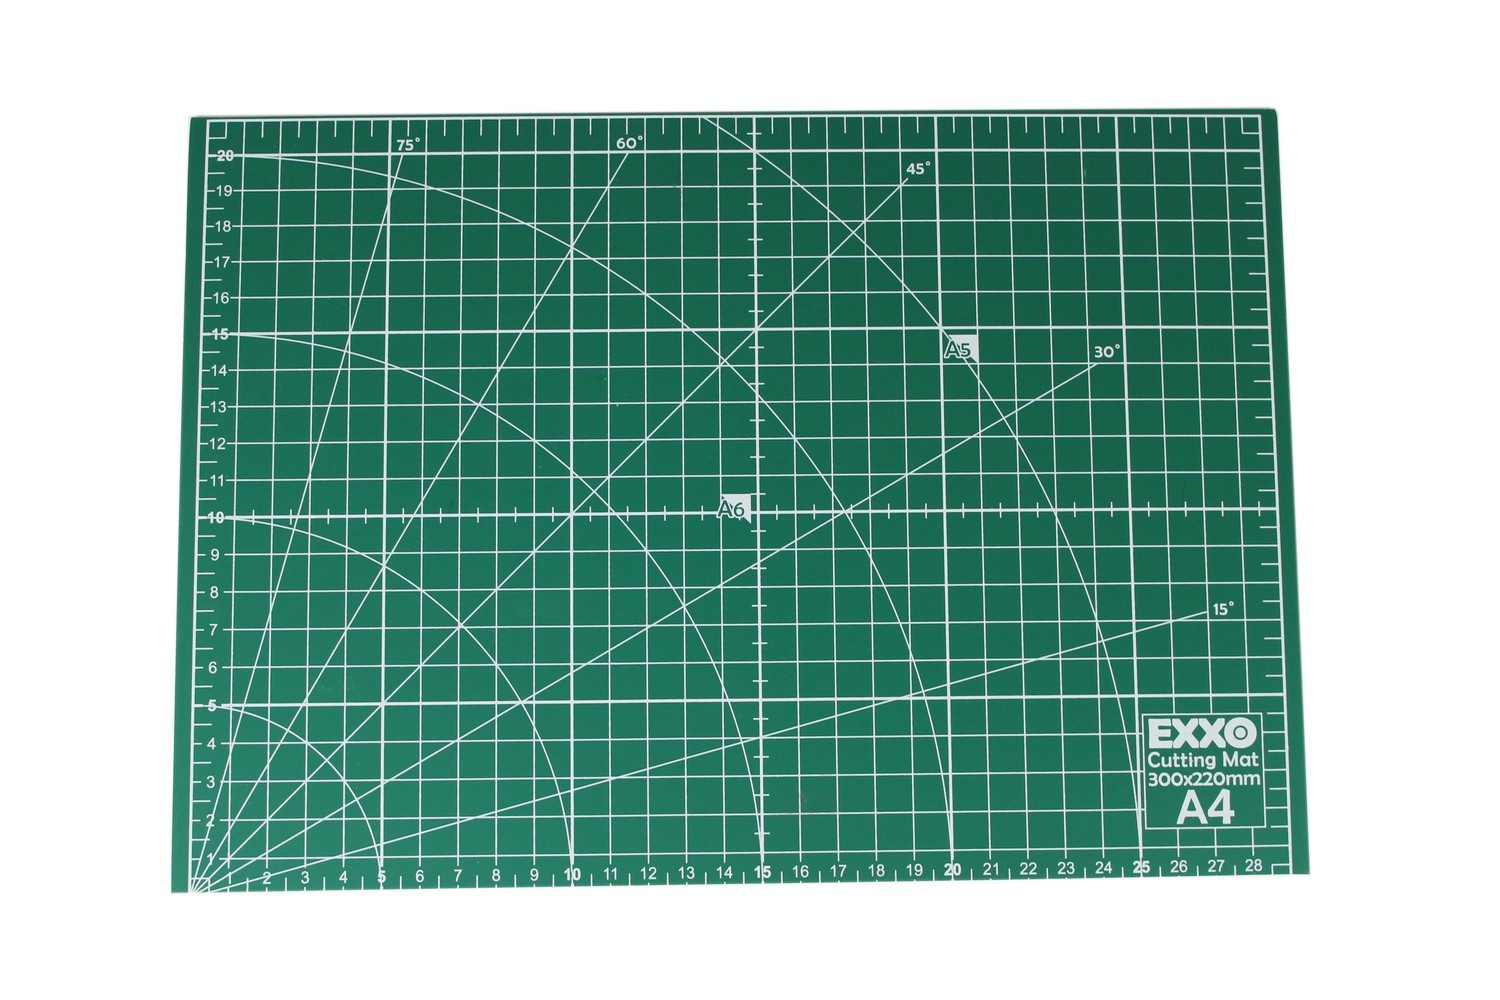 MakerBeamXS - 5mmx5mm Cutting mat / Work mat  for MakerBeamXS